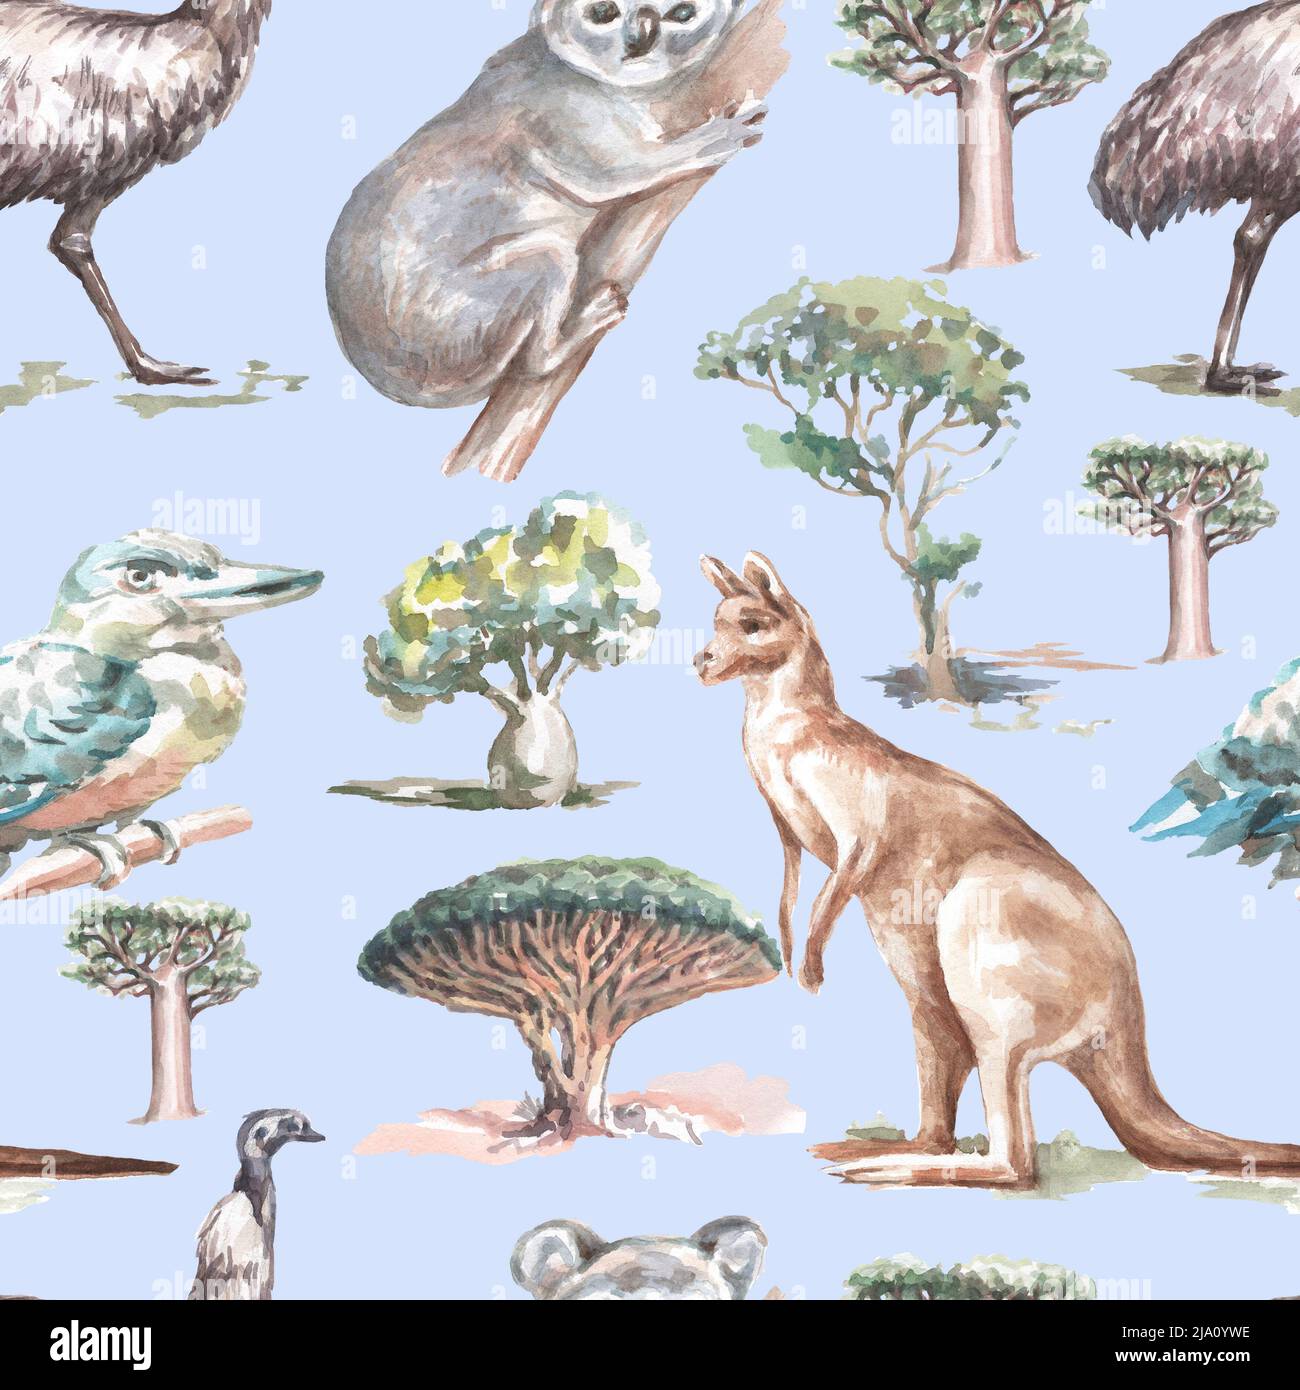 Animaux Australie illustration graphique dessin à la main koala ostrich emu isolé sur fond blanc ensemble Banque D'Images